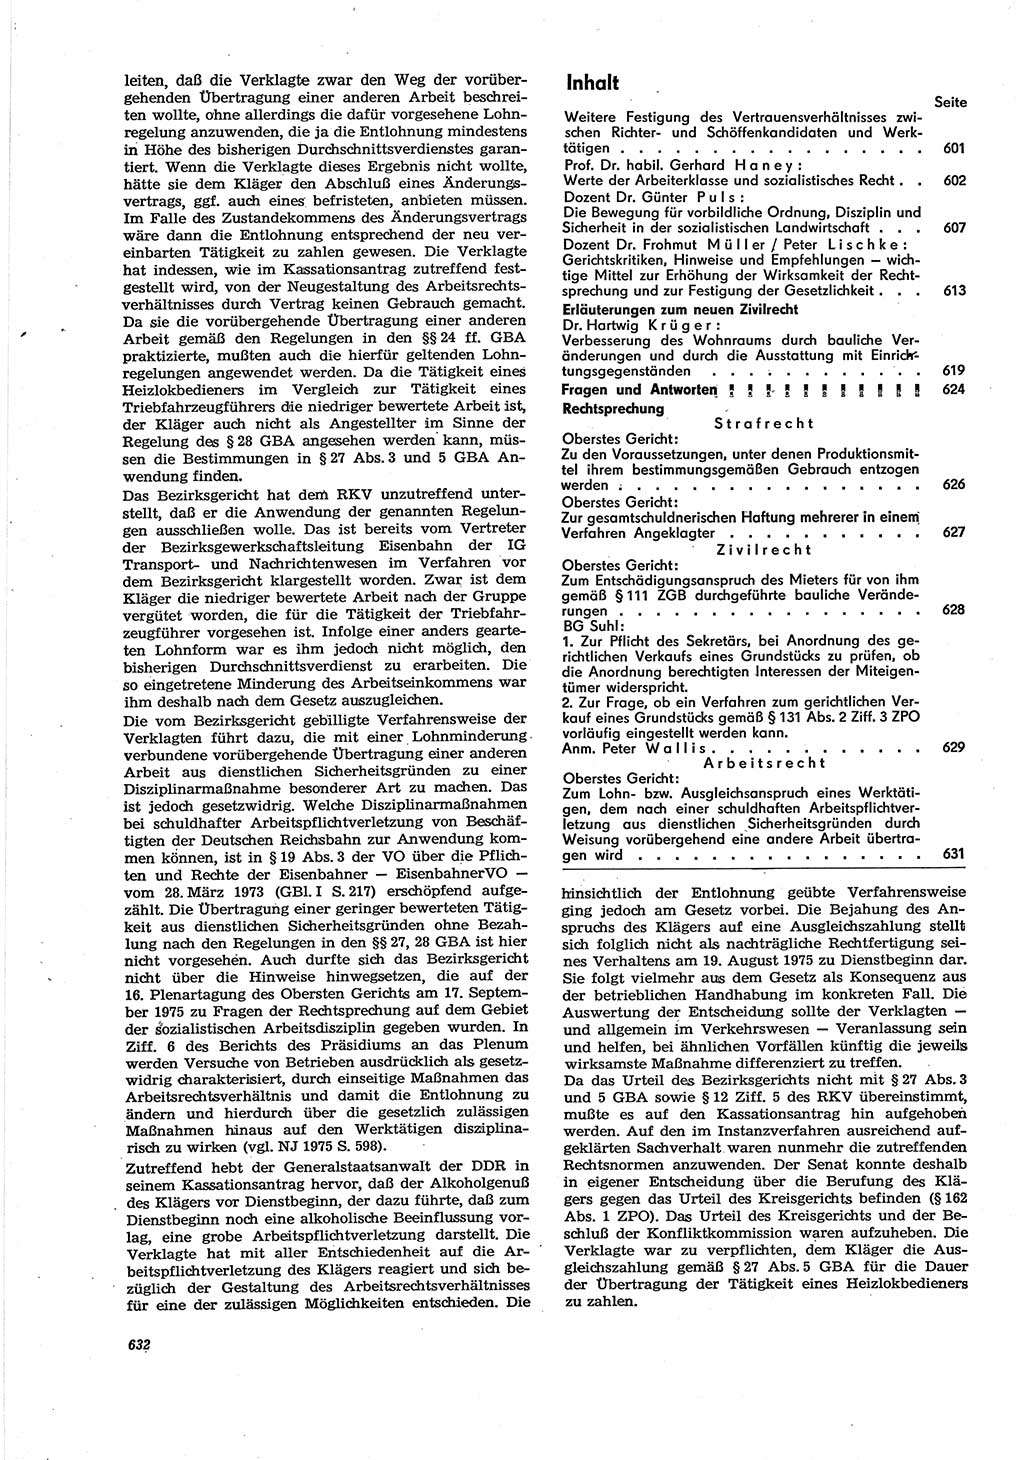 Neue Justiz (NJ), Zeitschrift für Recht und Rechtswissenschaft [Deutsche Demokratische Republik (DDR)], 30. Jahrgang 1976, Seite 632 (NJ DDR 1976, S. 632)